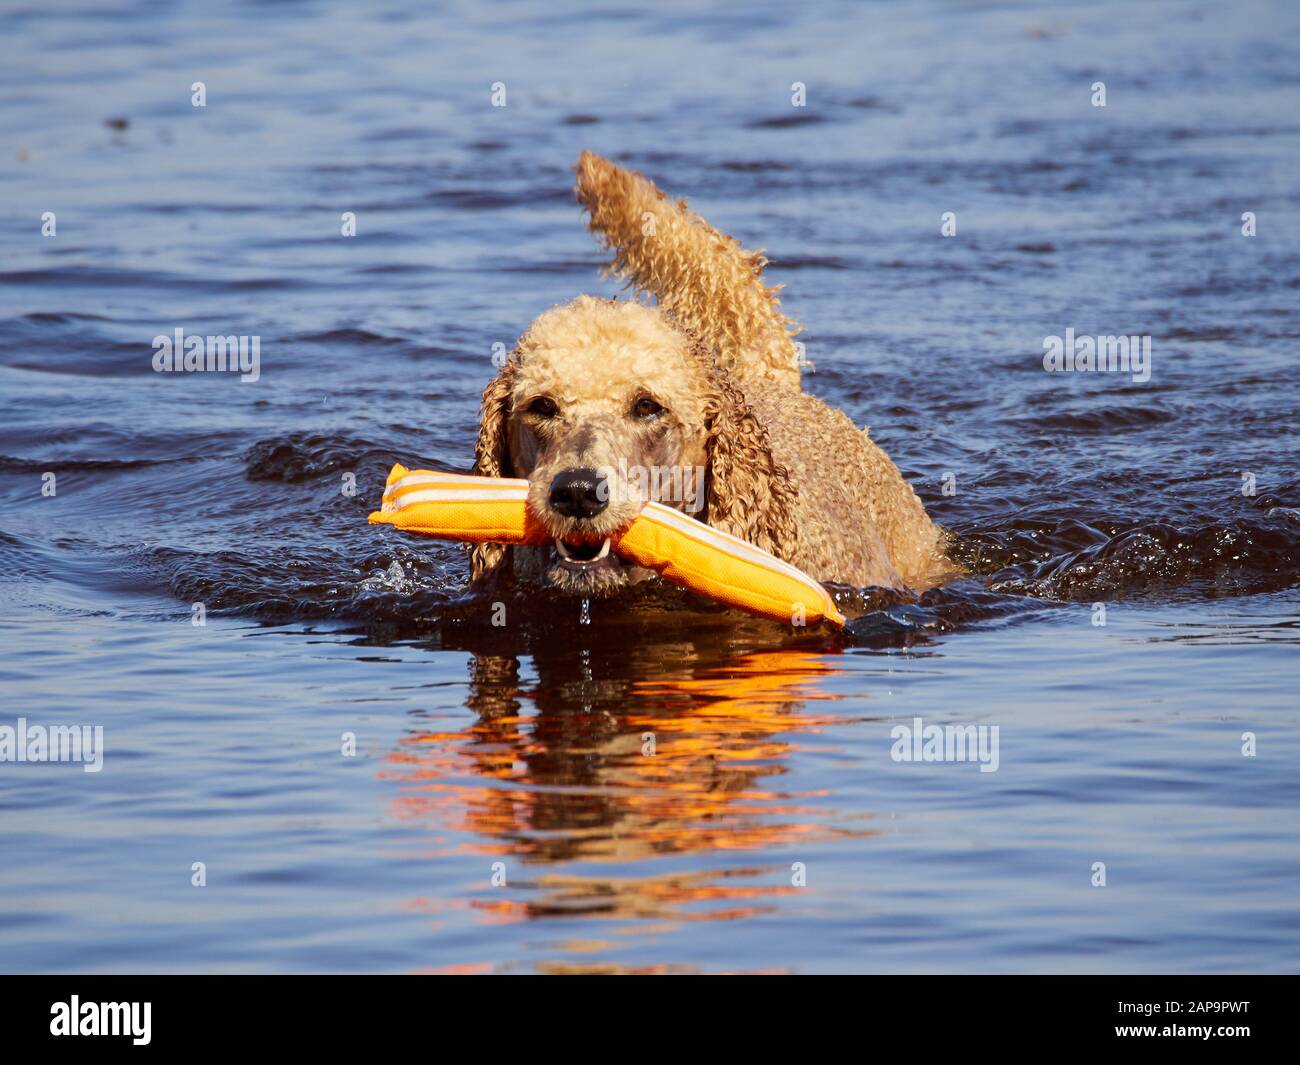 Standard poodle Schwimmen auf Dog Rescue Service wasser training. Spielen mit einem orangefarbenen abrufen Spielzeug in einem See an einem sonnigen Sommertag in Finnland. Stockfoto